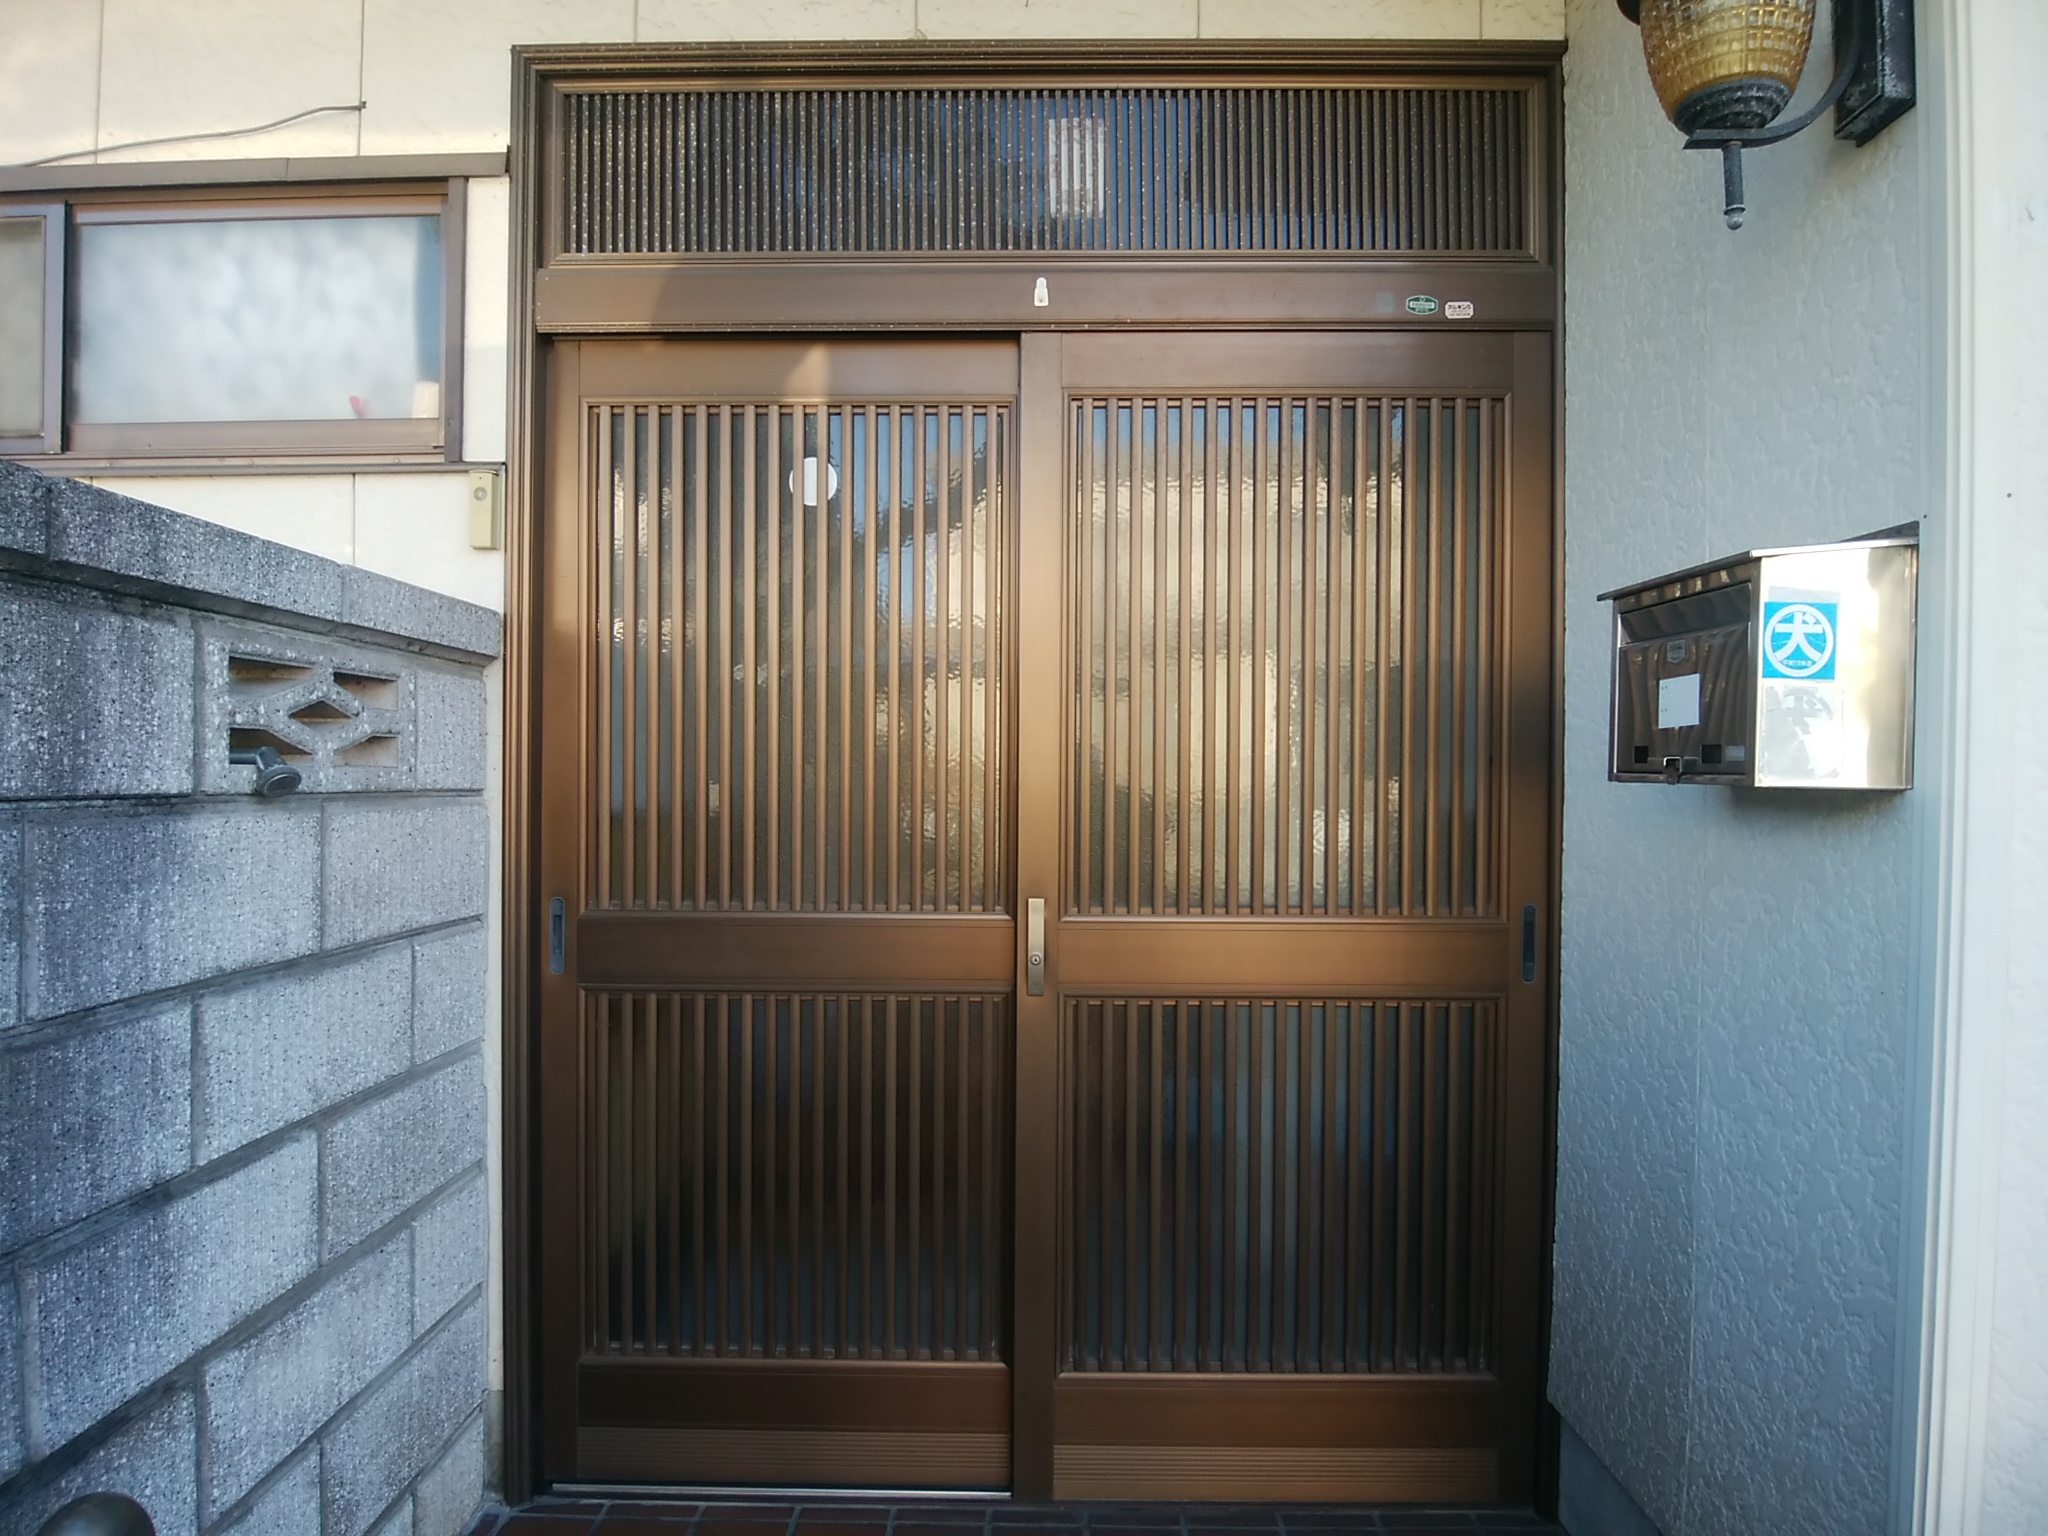 【LIXILリシェント D77型】引戸の玄関を開き戸にリフォームした事例玄関ドアのリフォームなら玄関ドアマイスターへお任せください